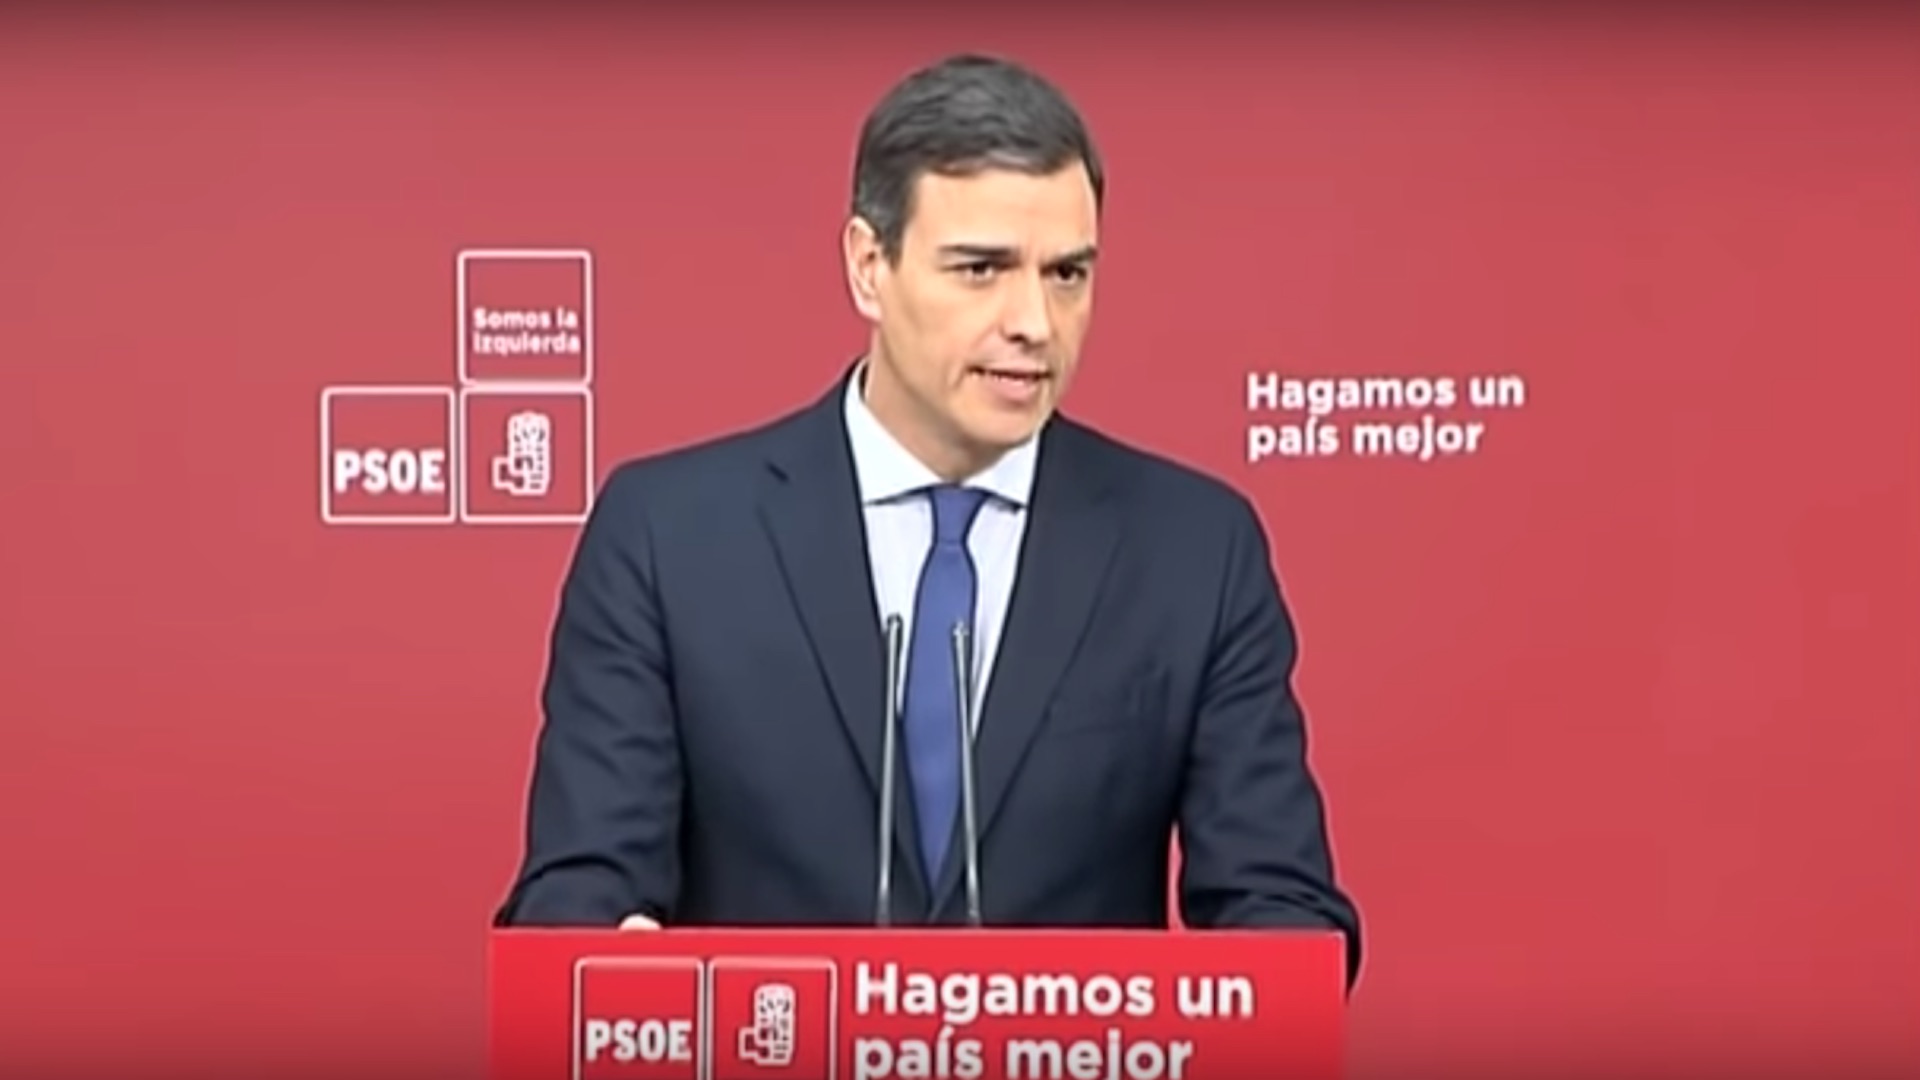 El PSOE convocará elecciones en unos meses si gana la moción de censura contra Rajoy